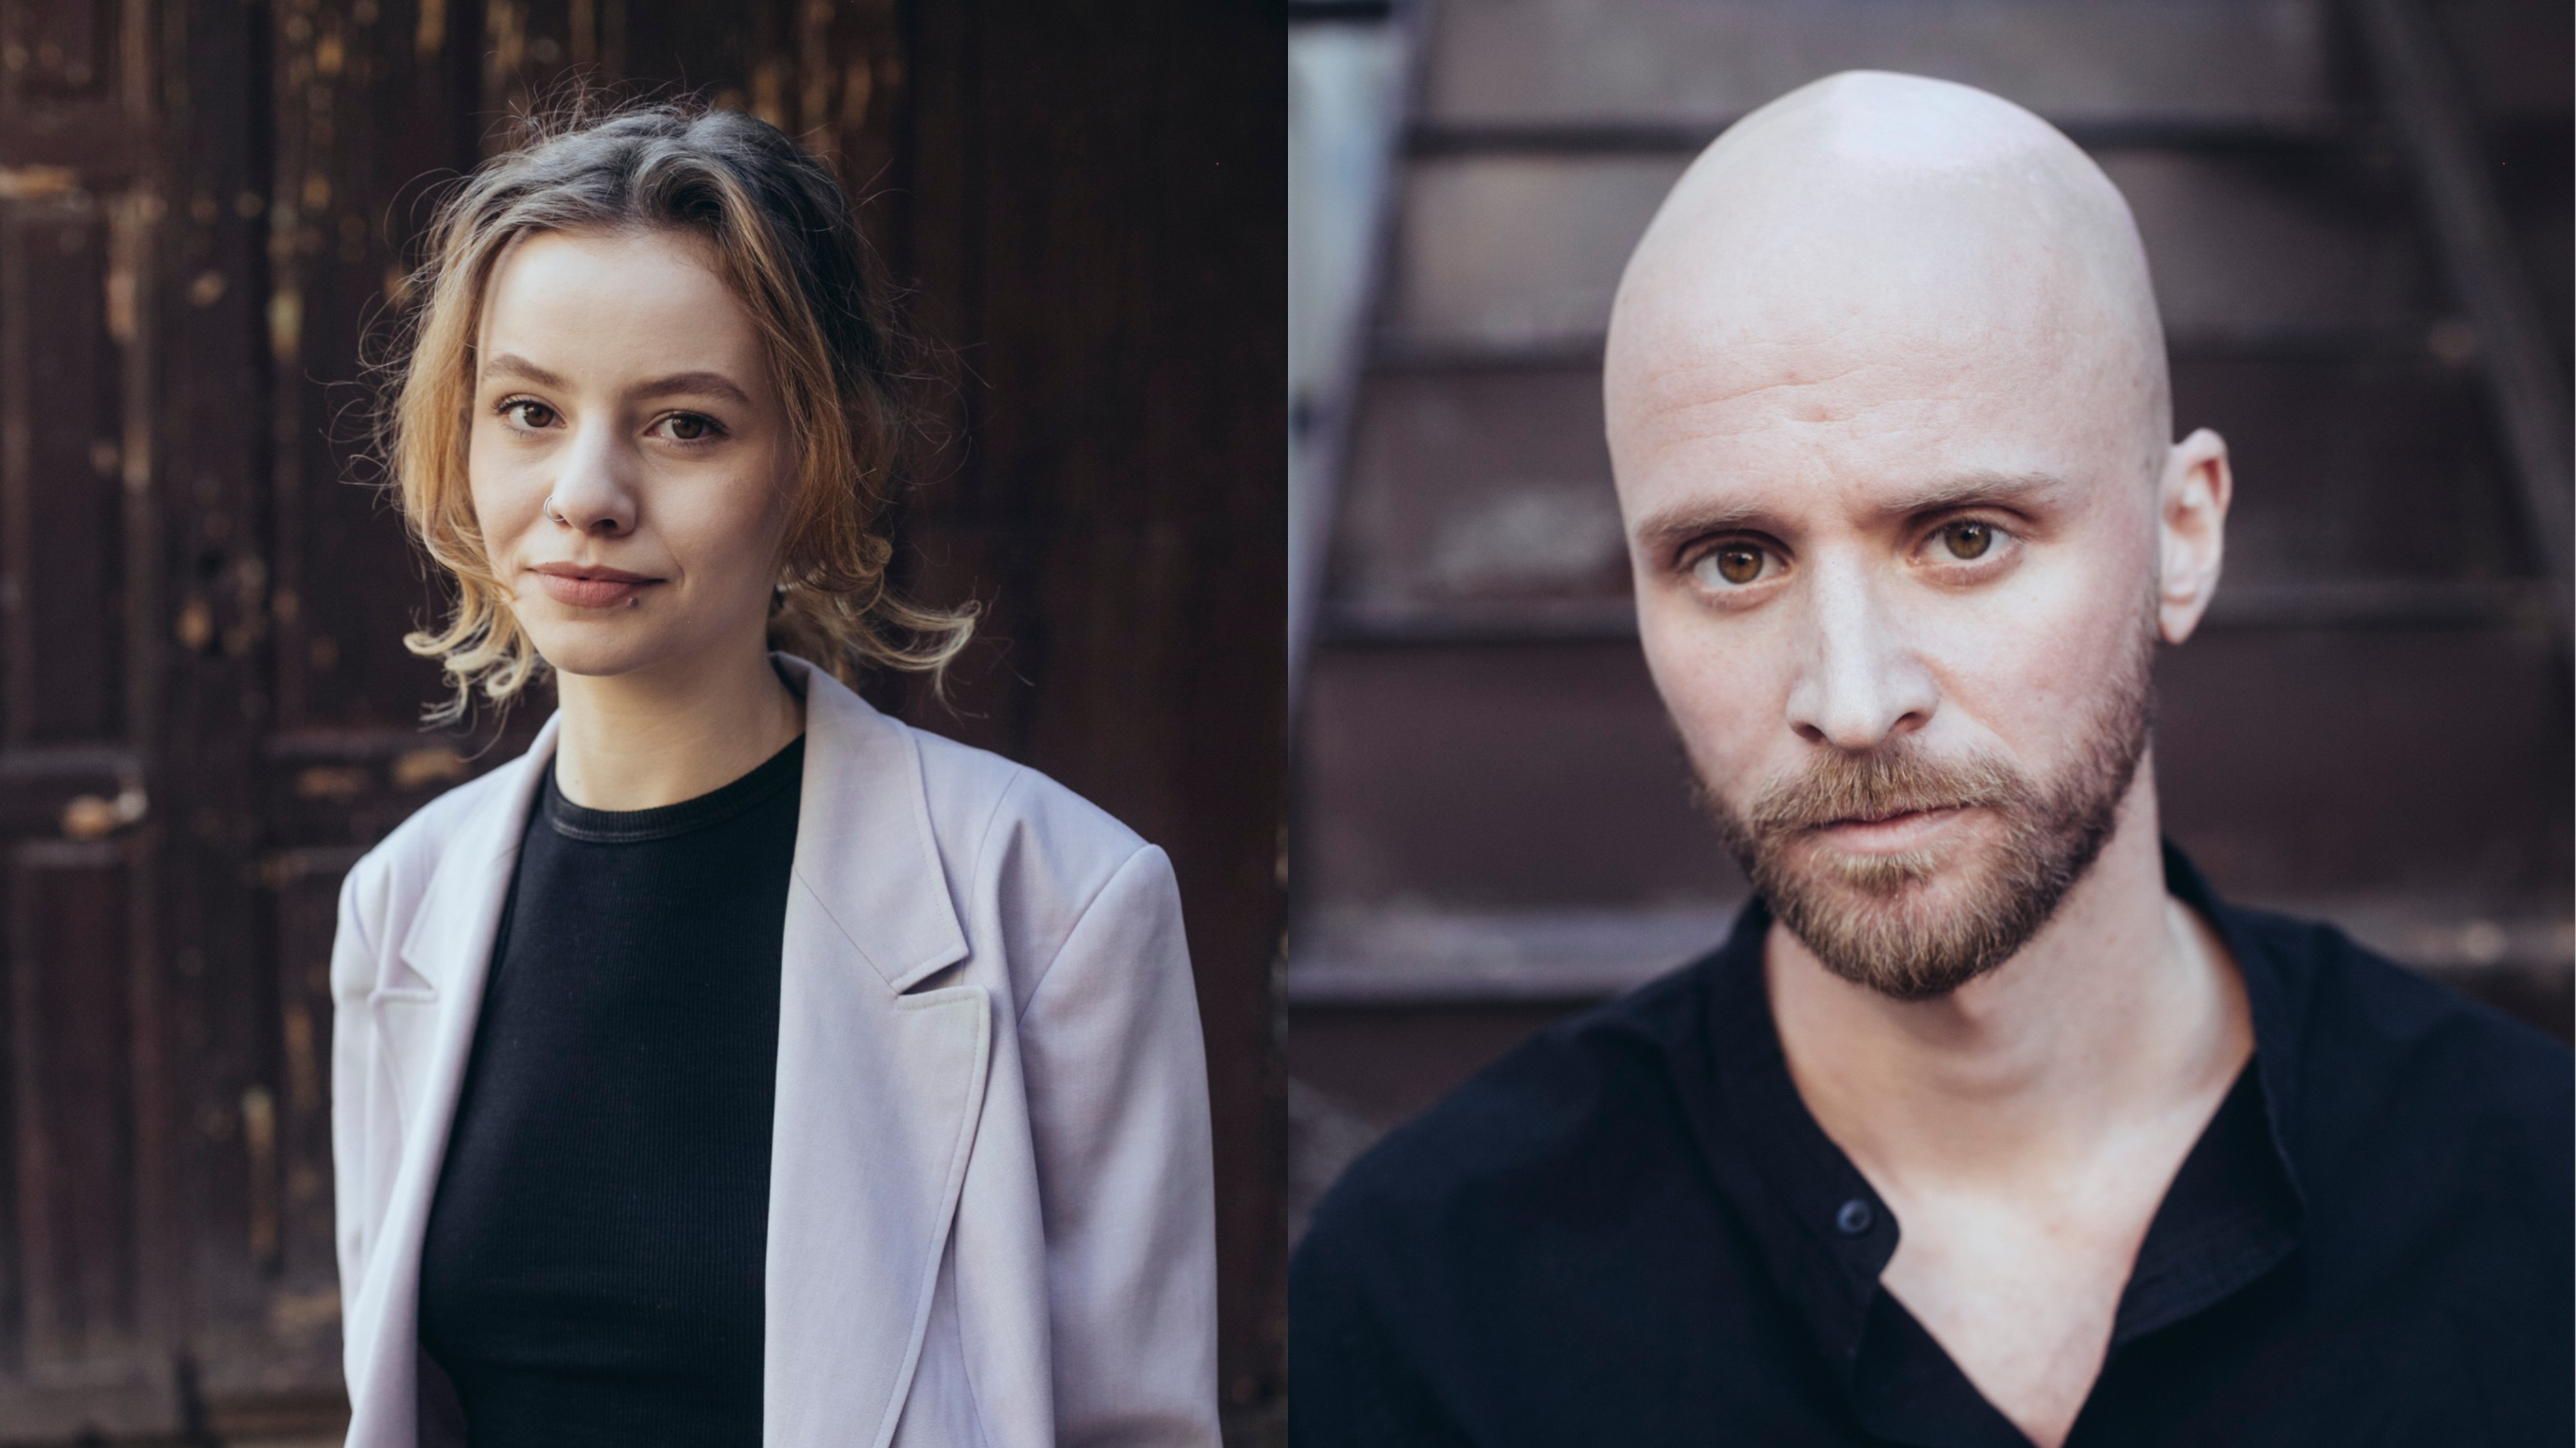 Két magyar színészt is beválasztottak a TIFF Tízen a filmért programjába